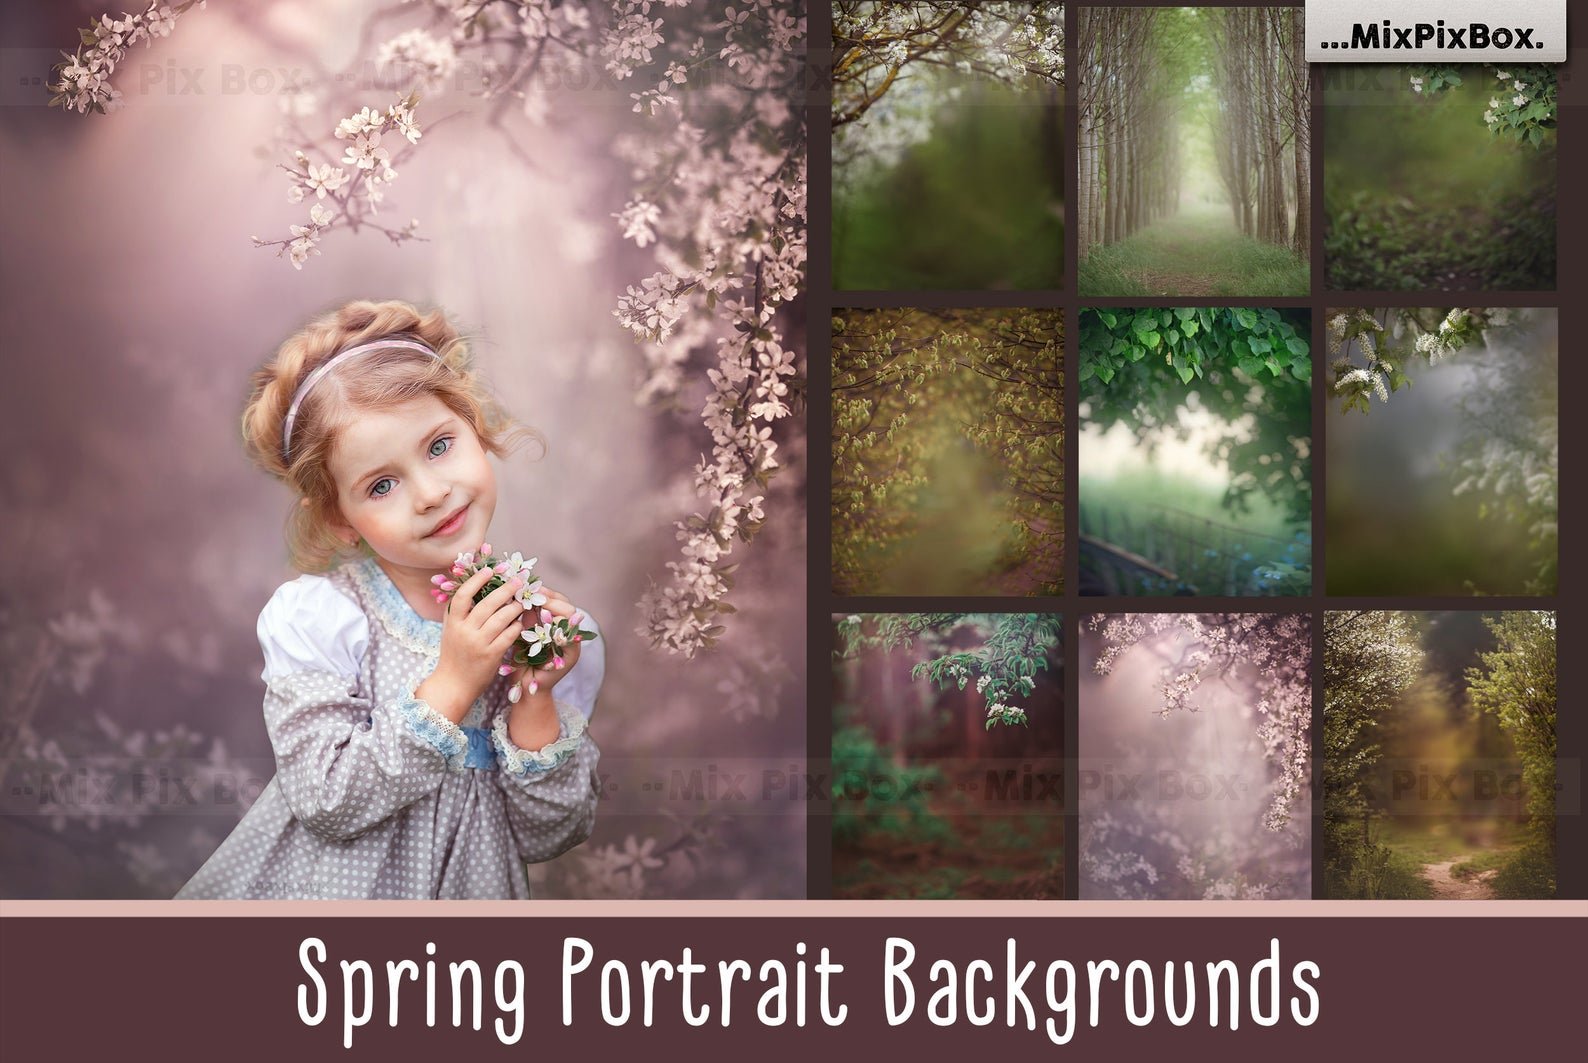 Spring Portrait Backgroundscover image.